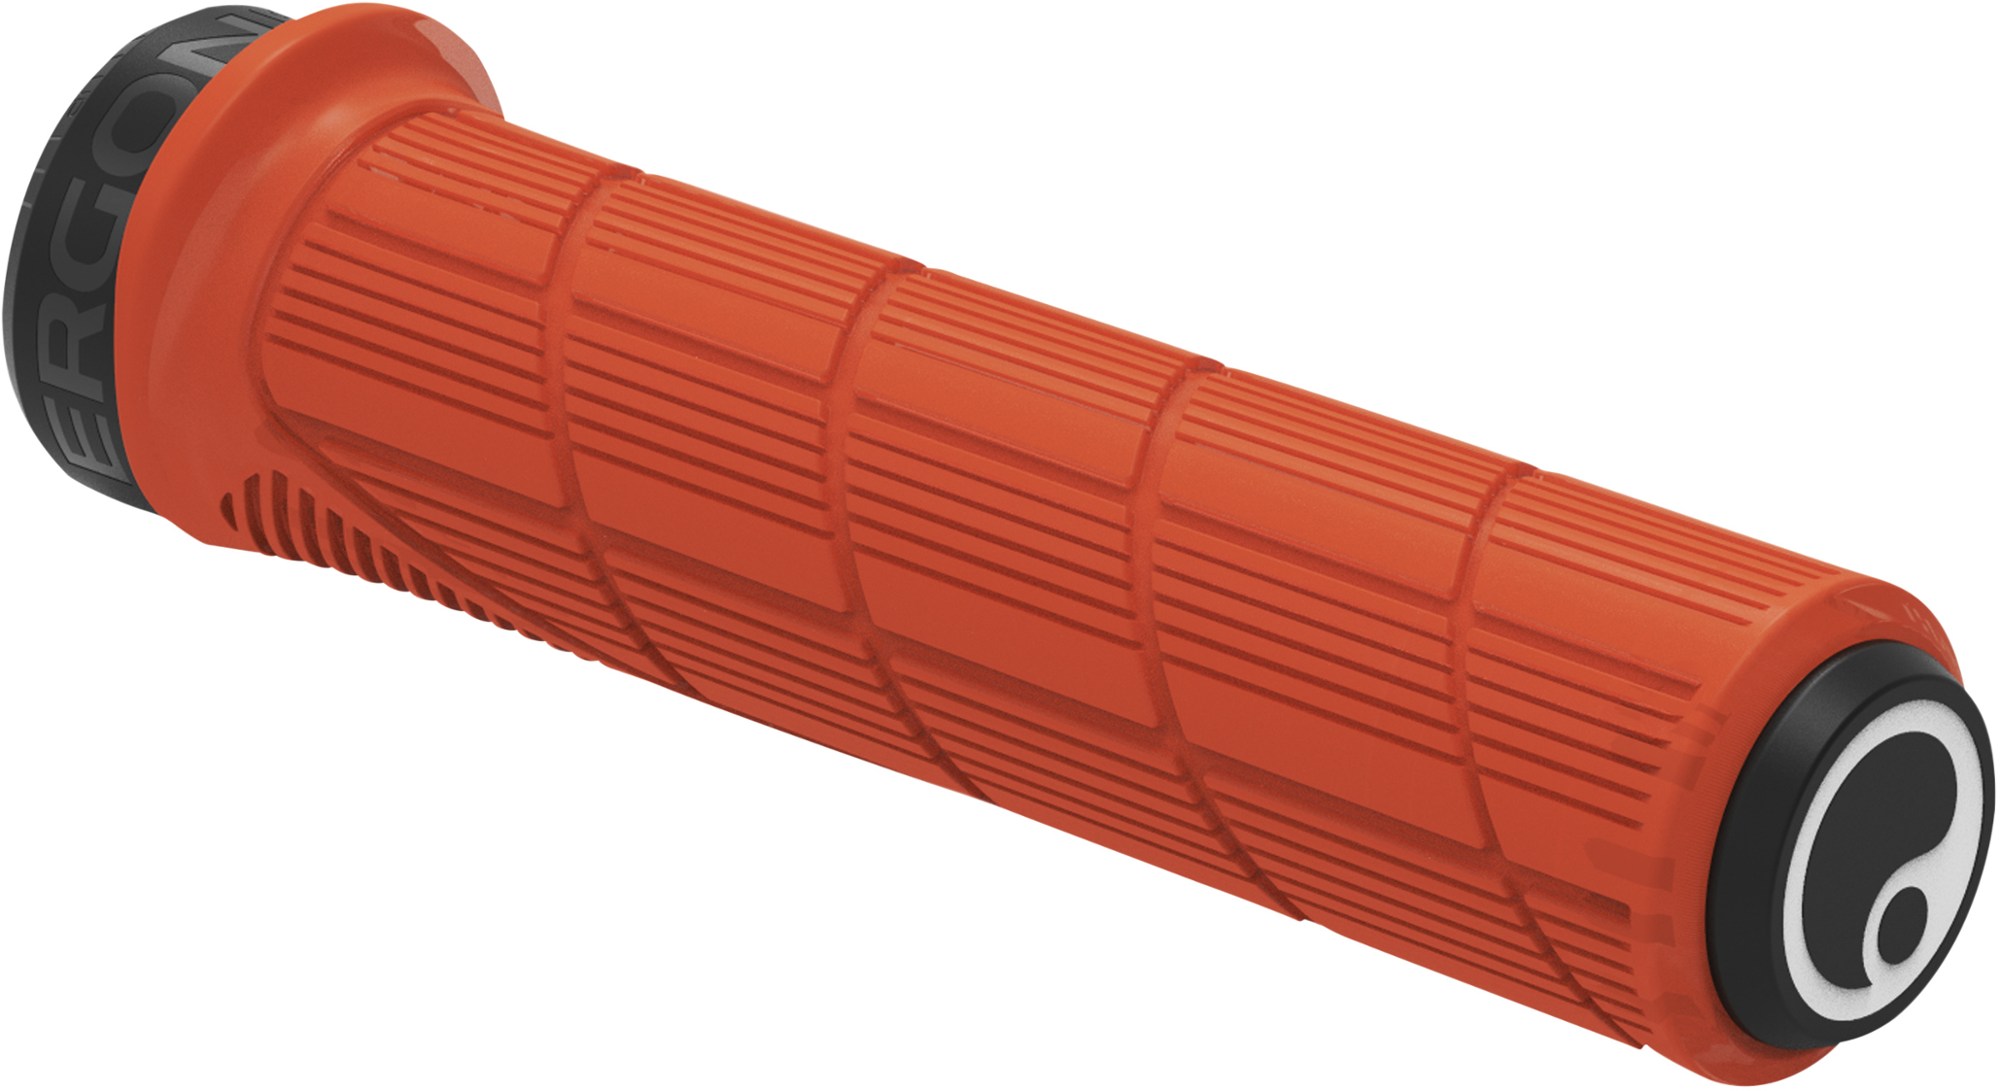 Ручки руля GD1 Evo Factory с фиксацией Ergon, оранжевый